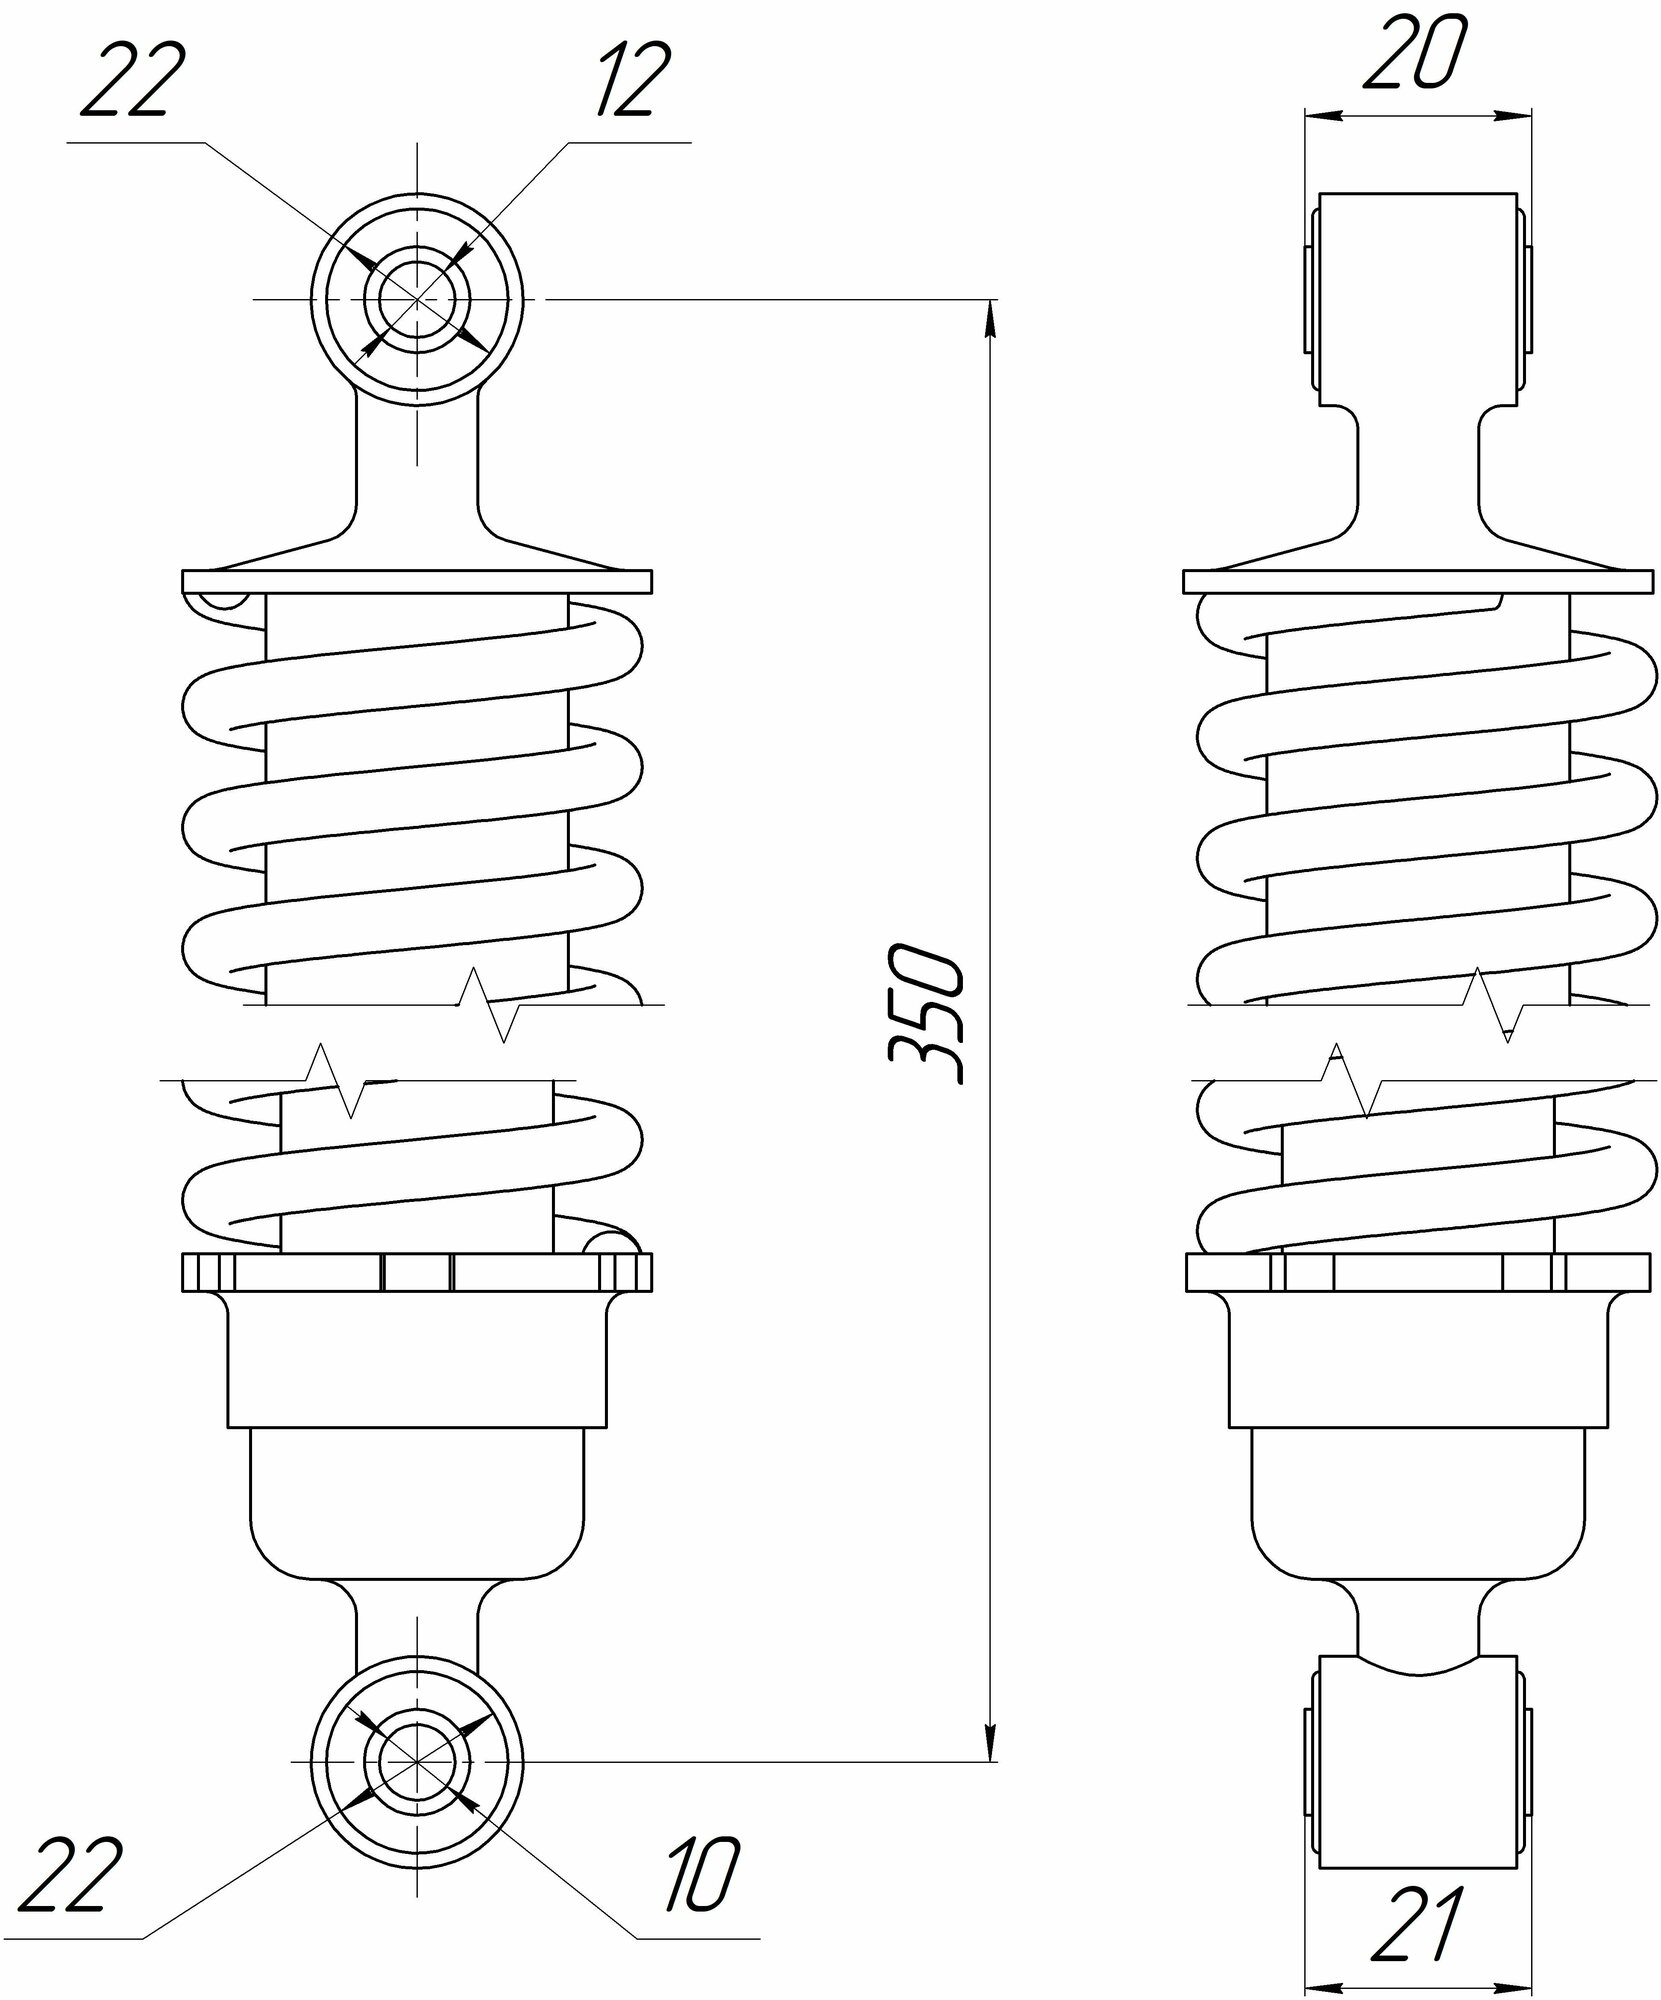 Амортизатор Альфа, Zodiak задний хром (L-340mm, D-12mm, d-10mm) дорогой (длинный стакан)